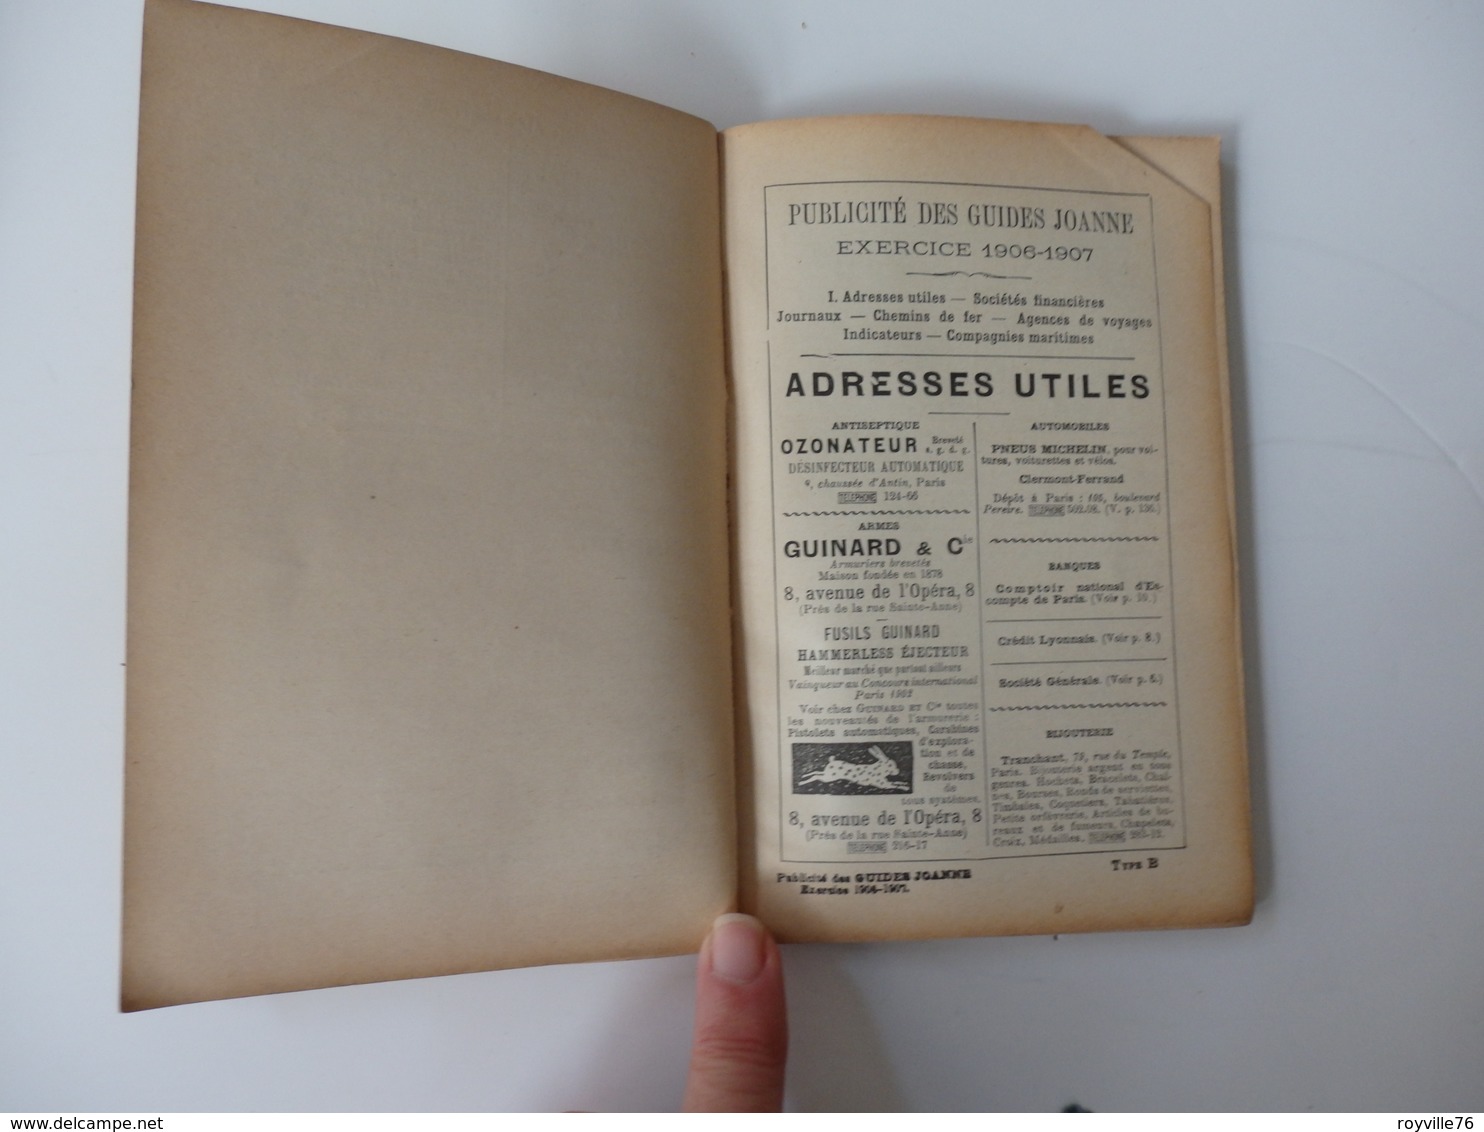 Guides Joanne de 136 pages "Les Anglais de la Manche" Jersey, Guernesey, Sercq, Auregny.